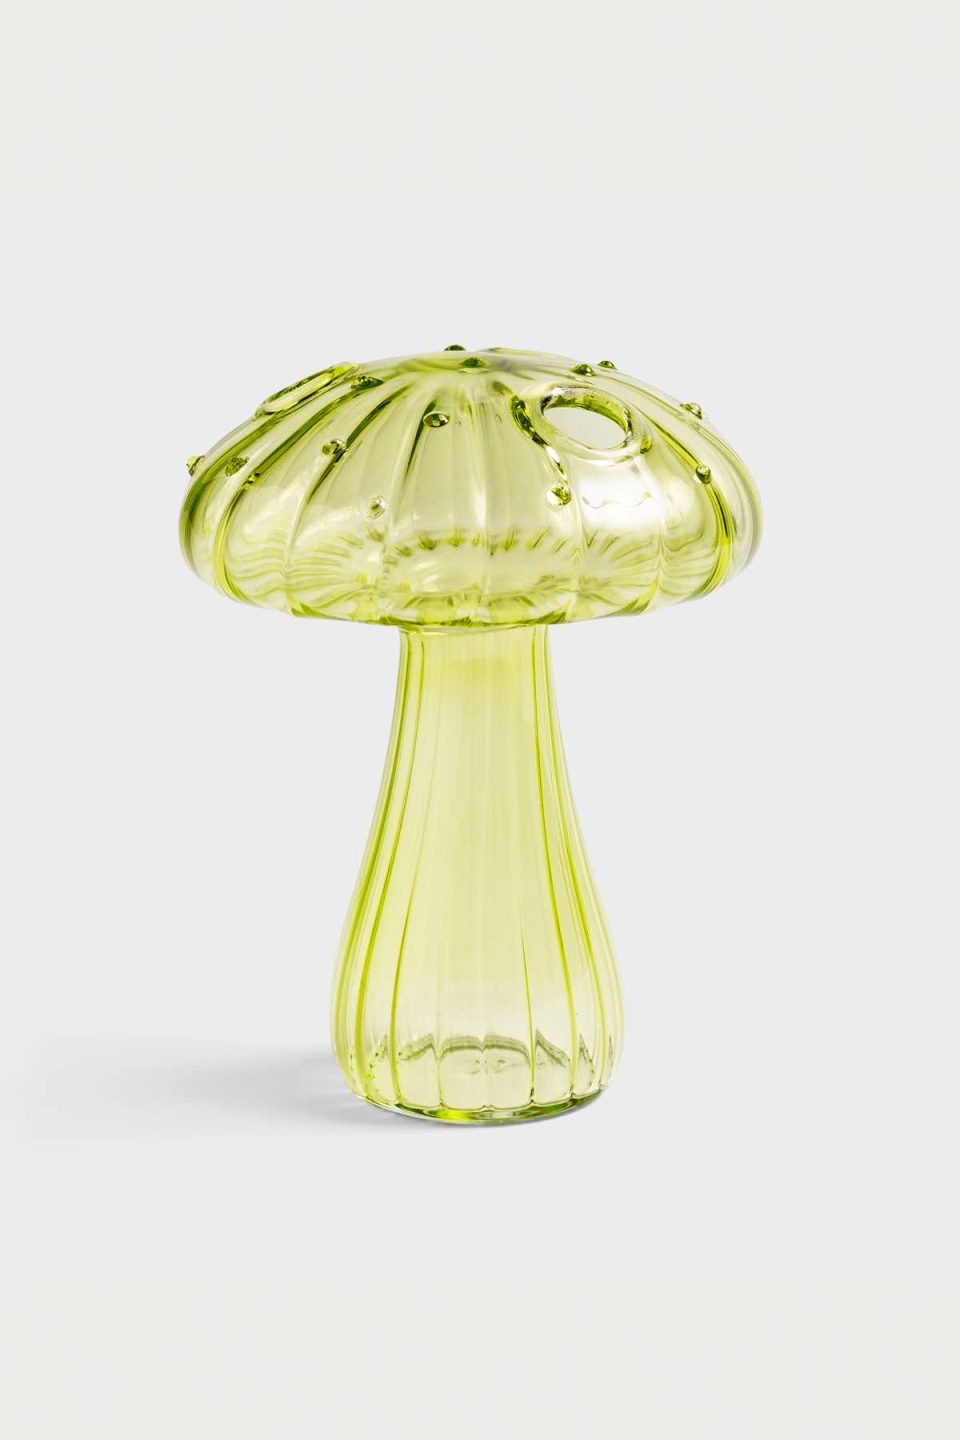 Na slici je staklena vaza u obliku gljive zelene boje. Vaza ima nekoliko rupica za cvjetiće na klobuku, stoji na sivoj pozadini